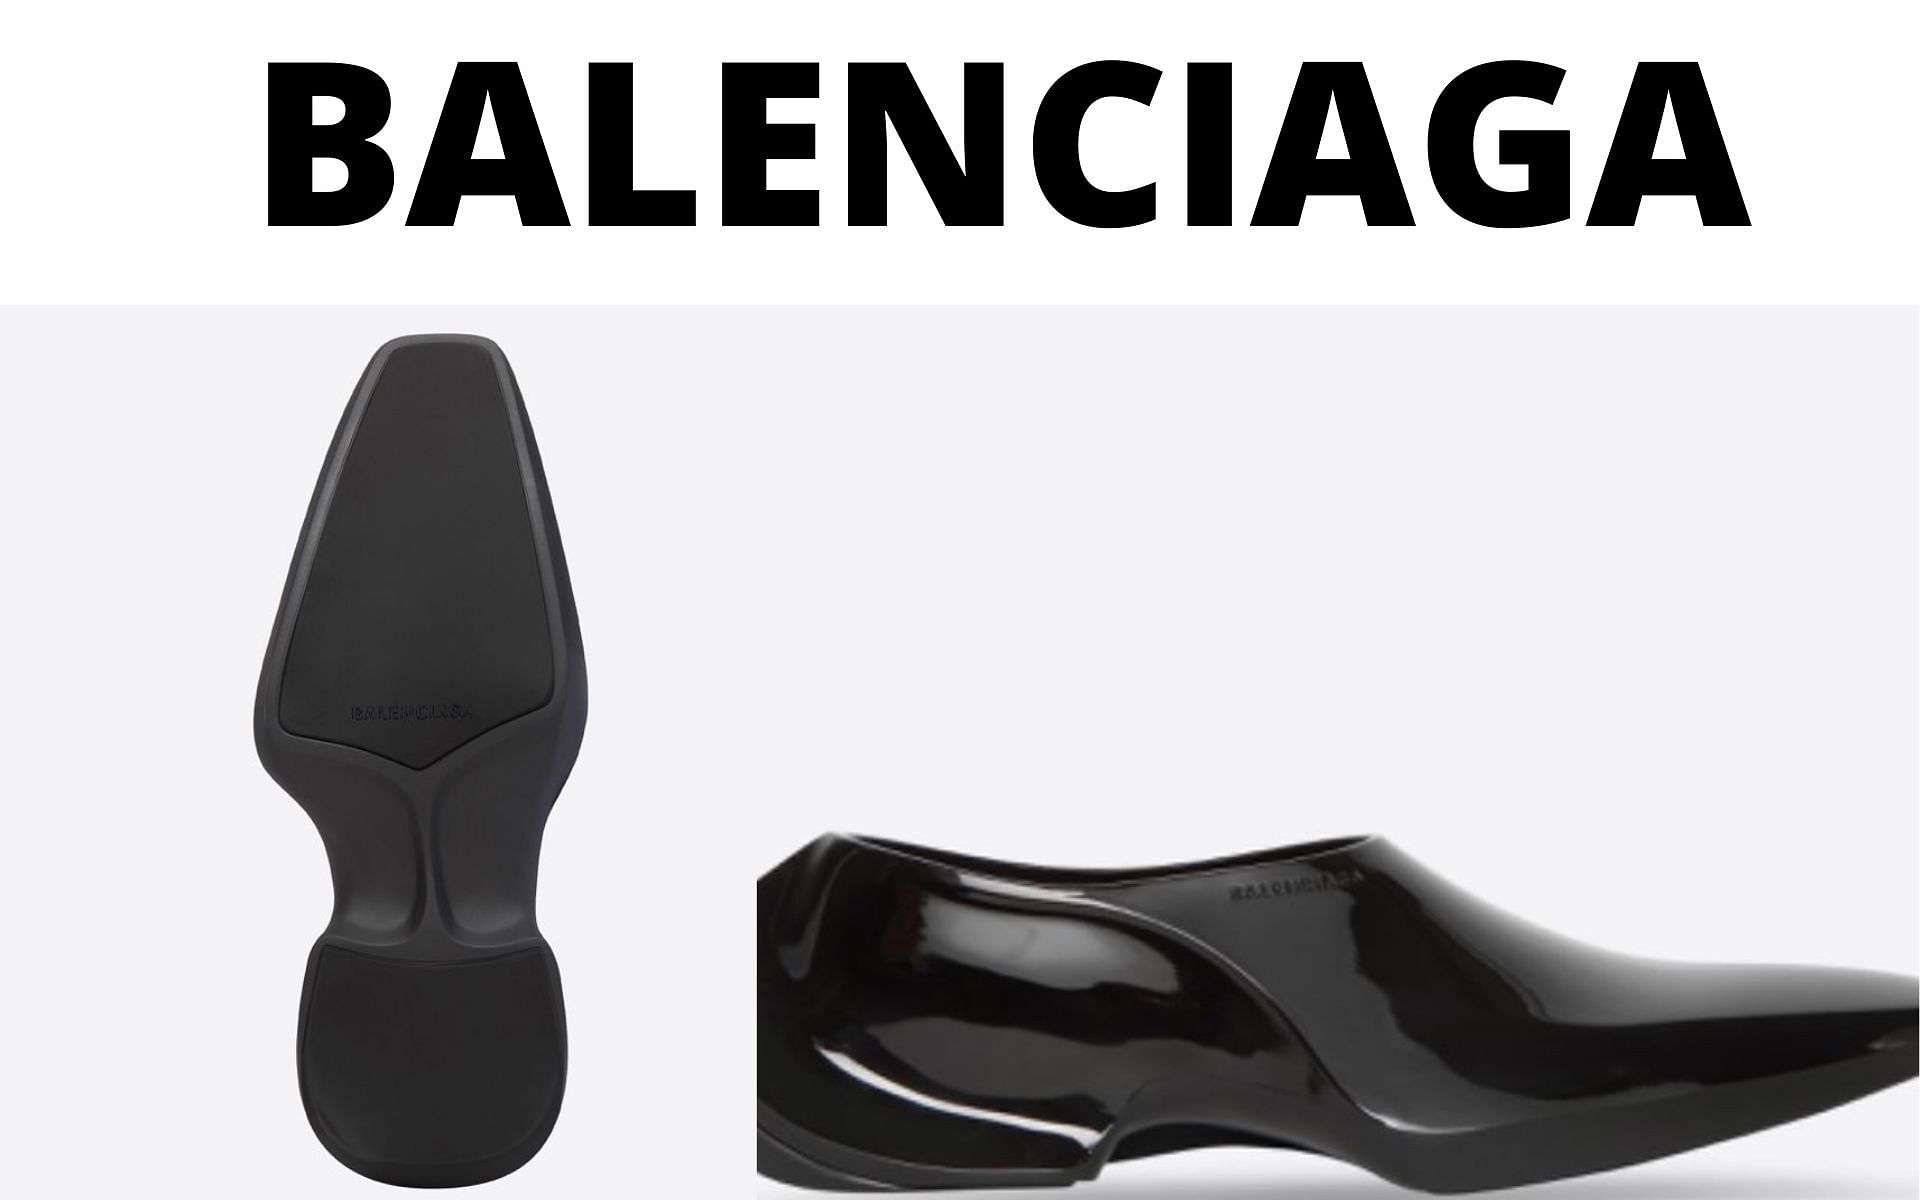 Balenciaga launched Space shoes recently (Image via Balenciaga)